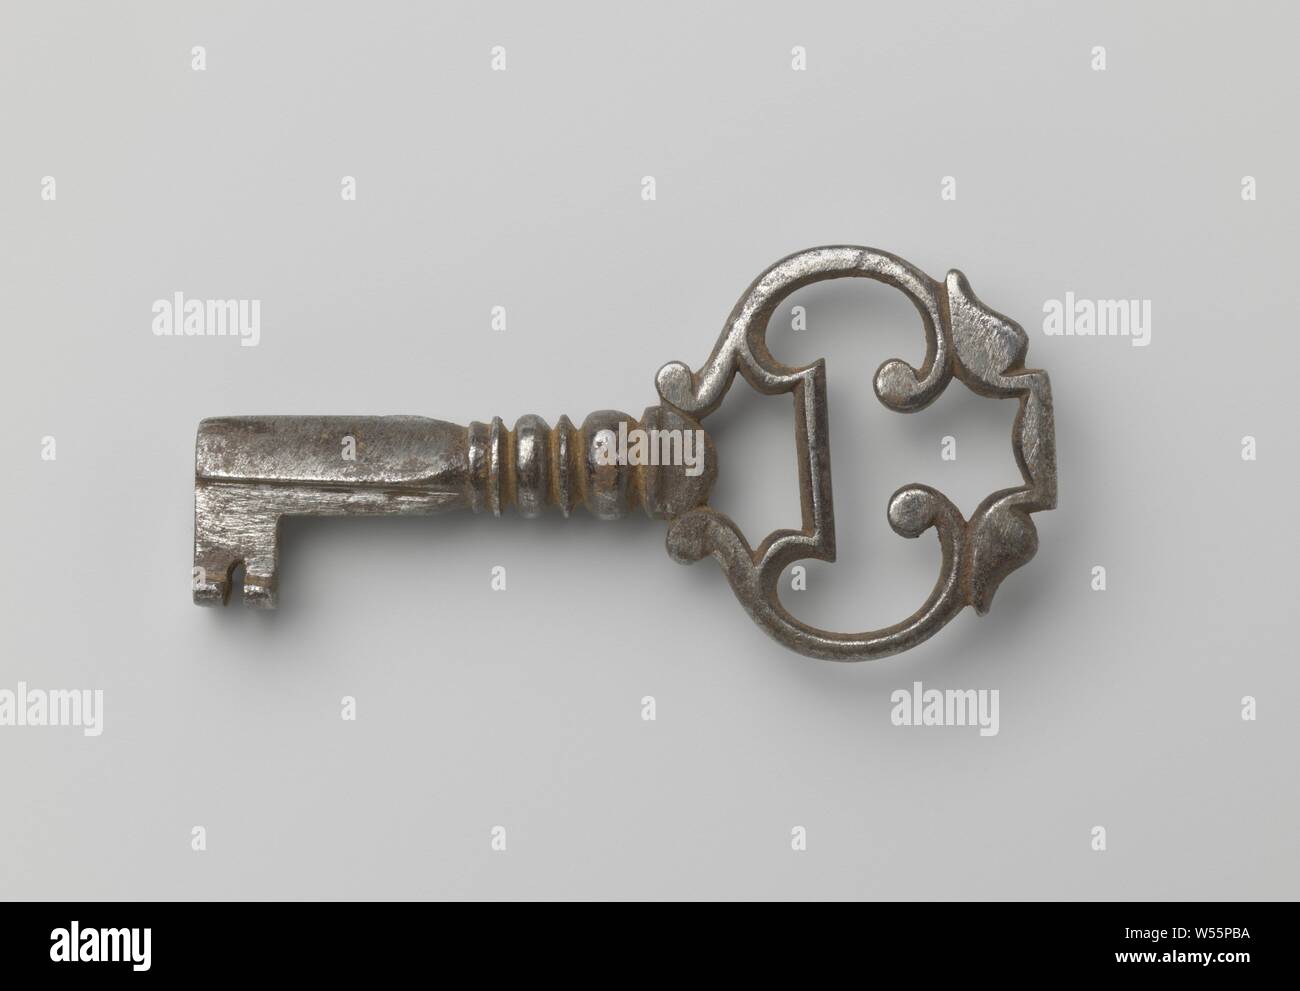 Schlüssel, Schlüssel, von denen der Griff besteht aus zwei sich gegenseitig verbunden ist, mittels einer Stange und zwei Blätter, verbunden und einander gegenüber. Die Welle besteht aus zwei Tori zwischen den Scheiben an der Oberseite und wird dann dreieckige., C. 1600 - C. 1699, Bügeleisen (Metall), l 4,9 cm × w 2,4 cm Stockfoto